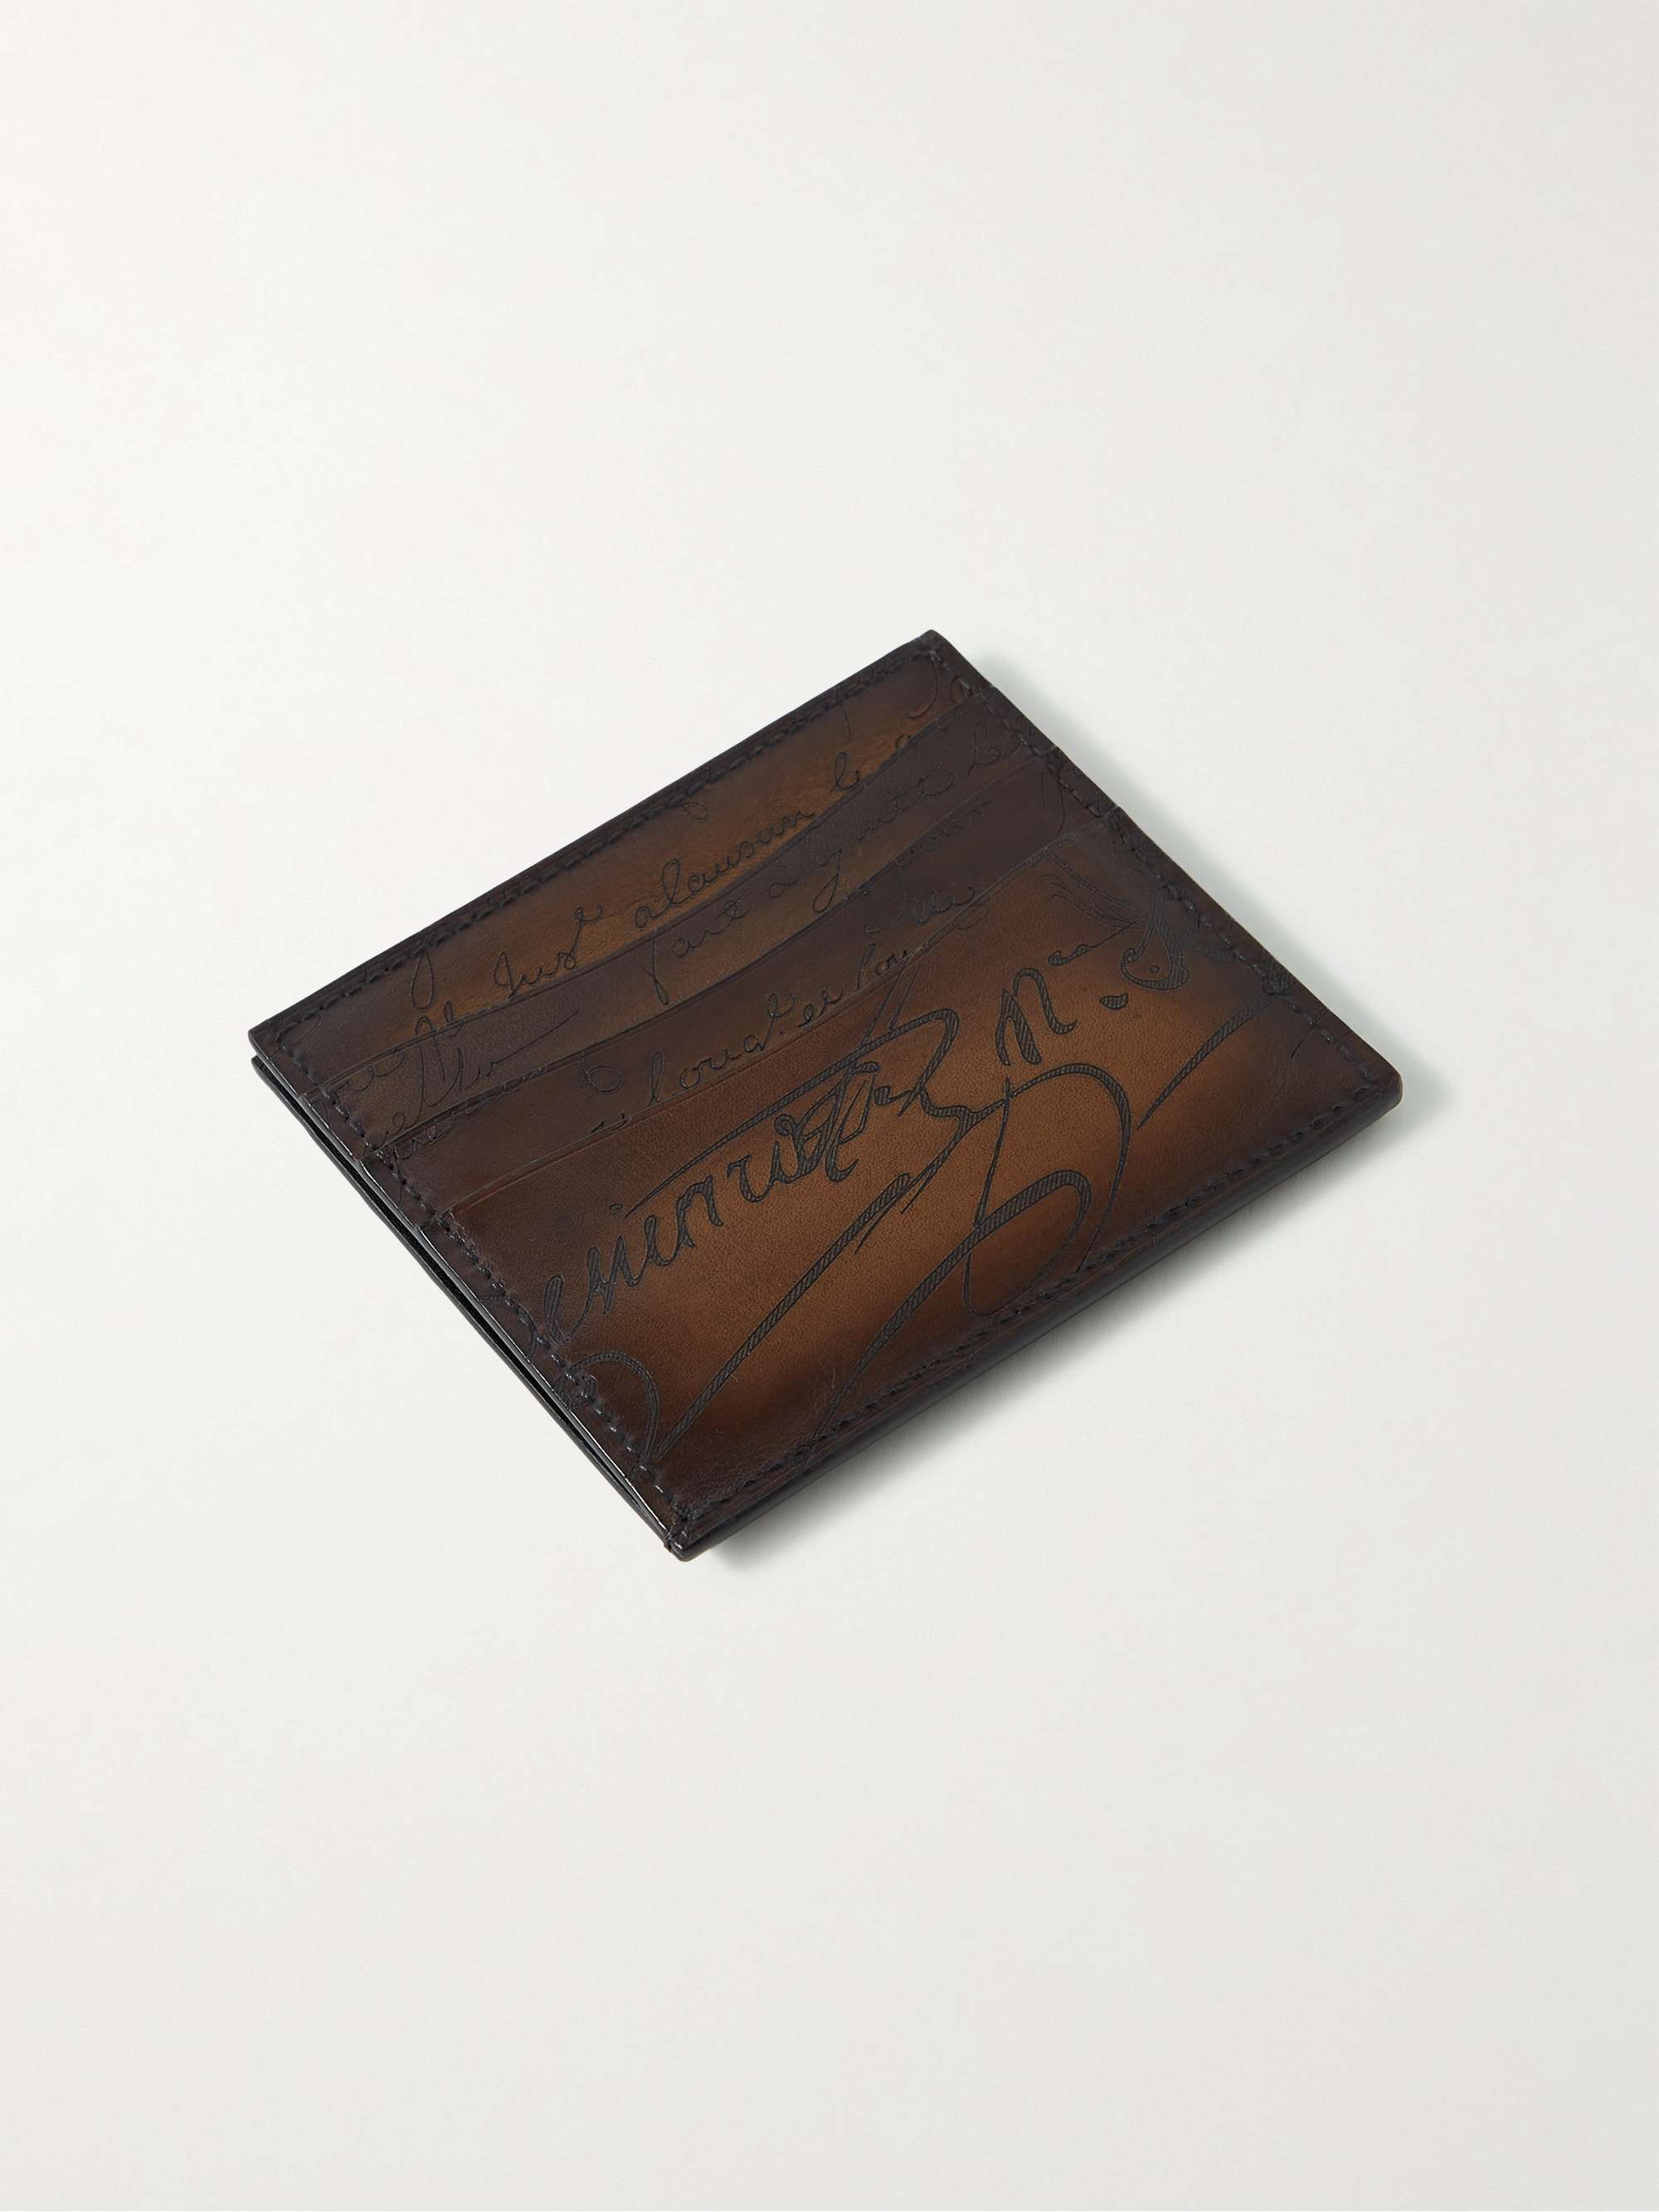 BERLUTI Bambou Scritto Leather Cardholder